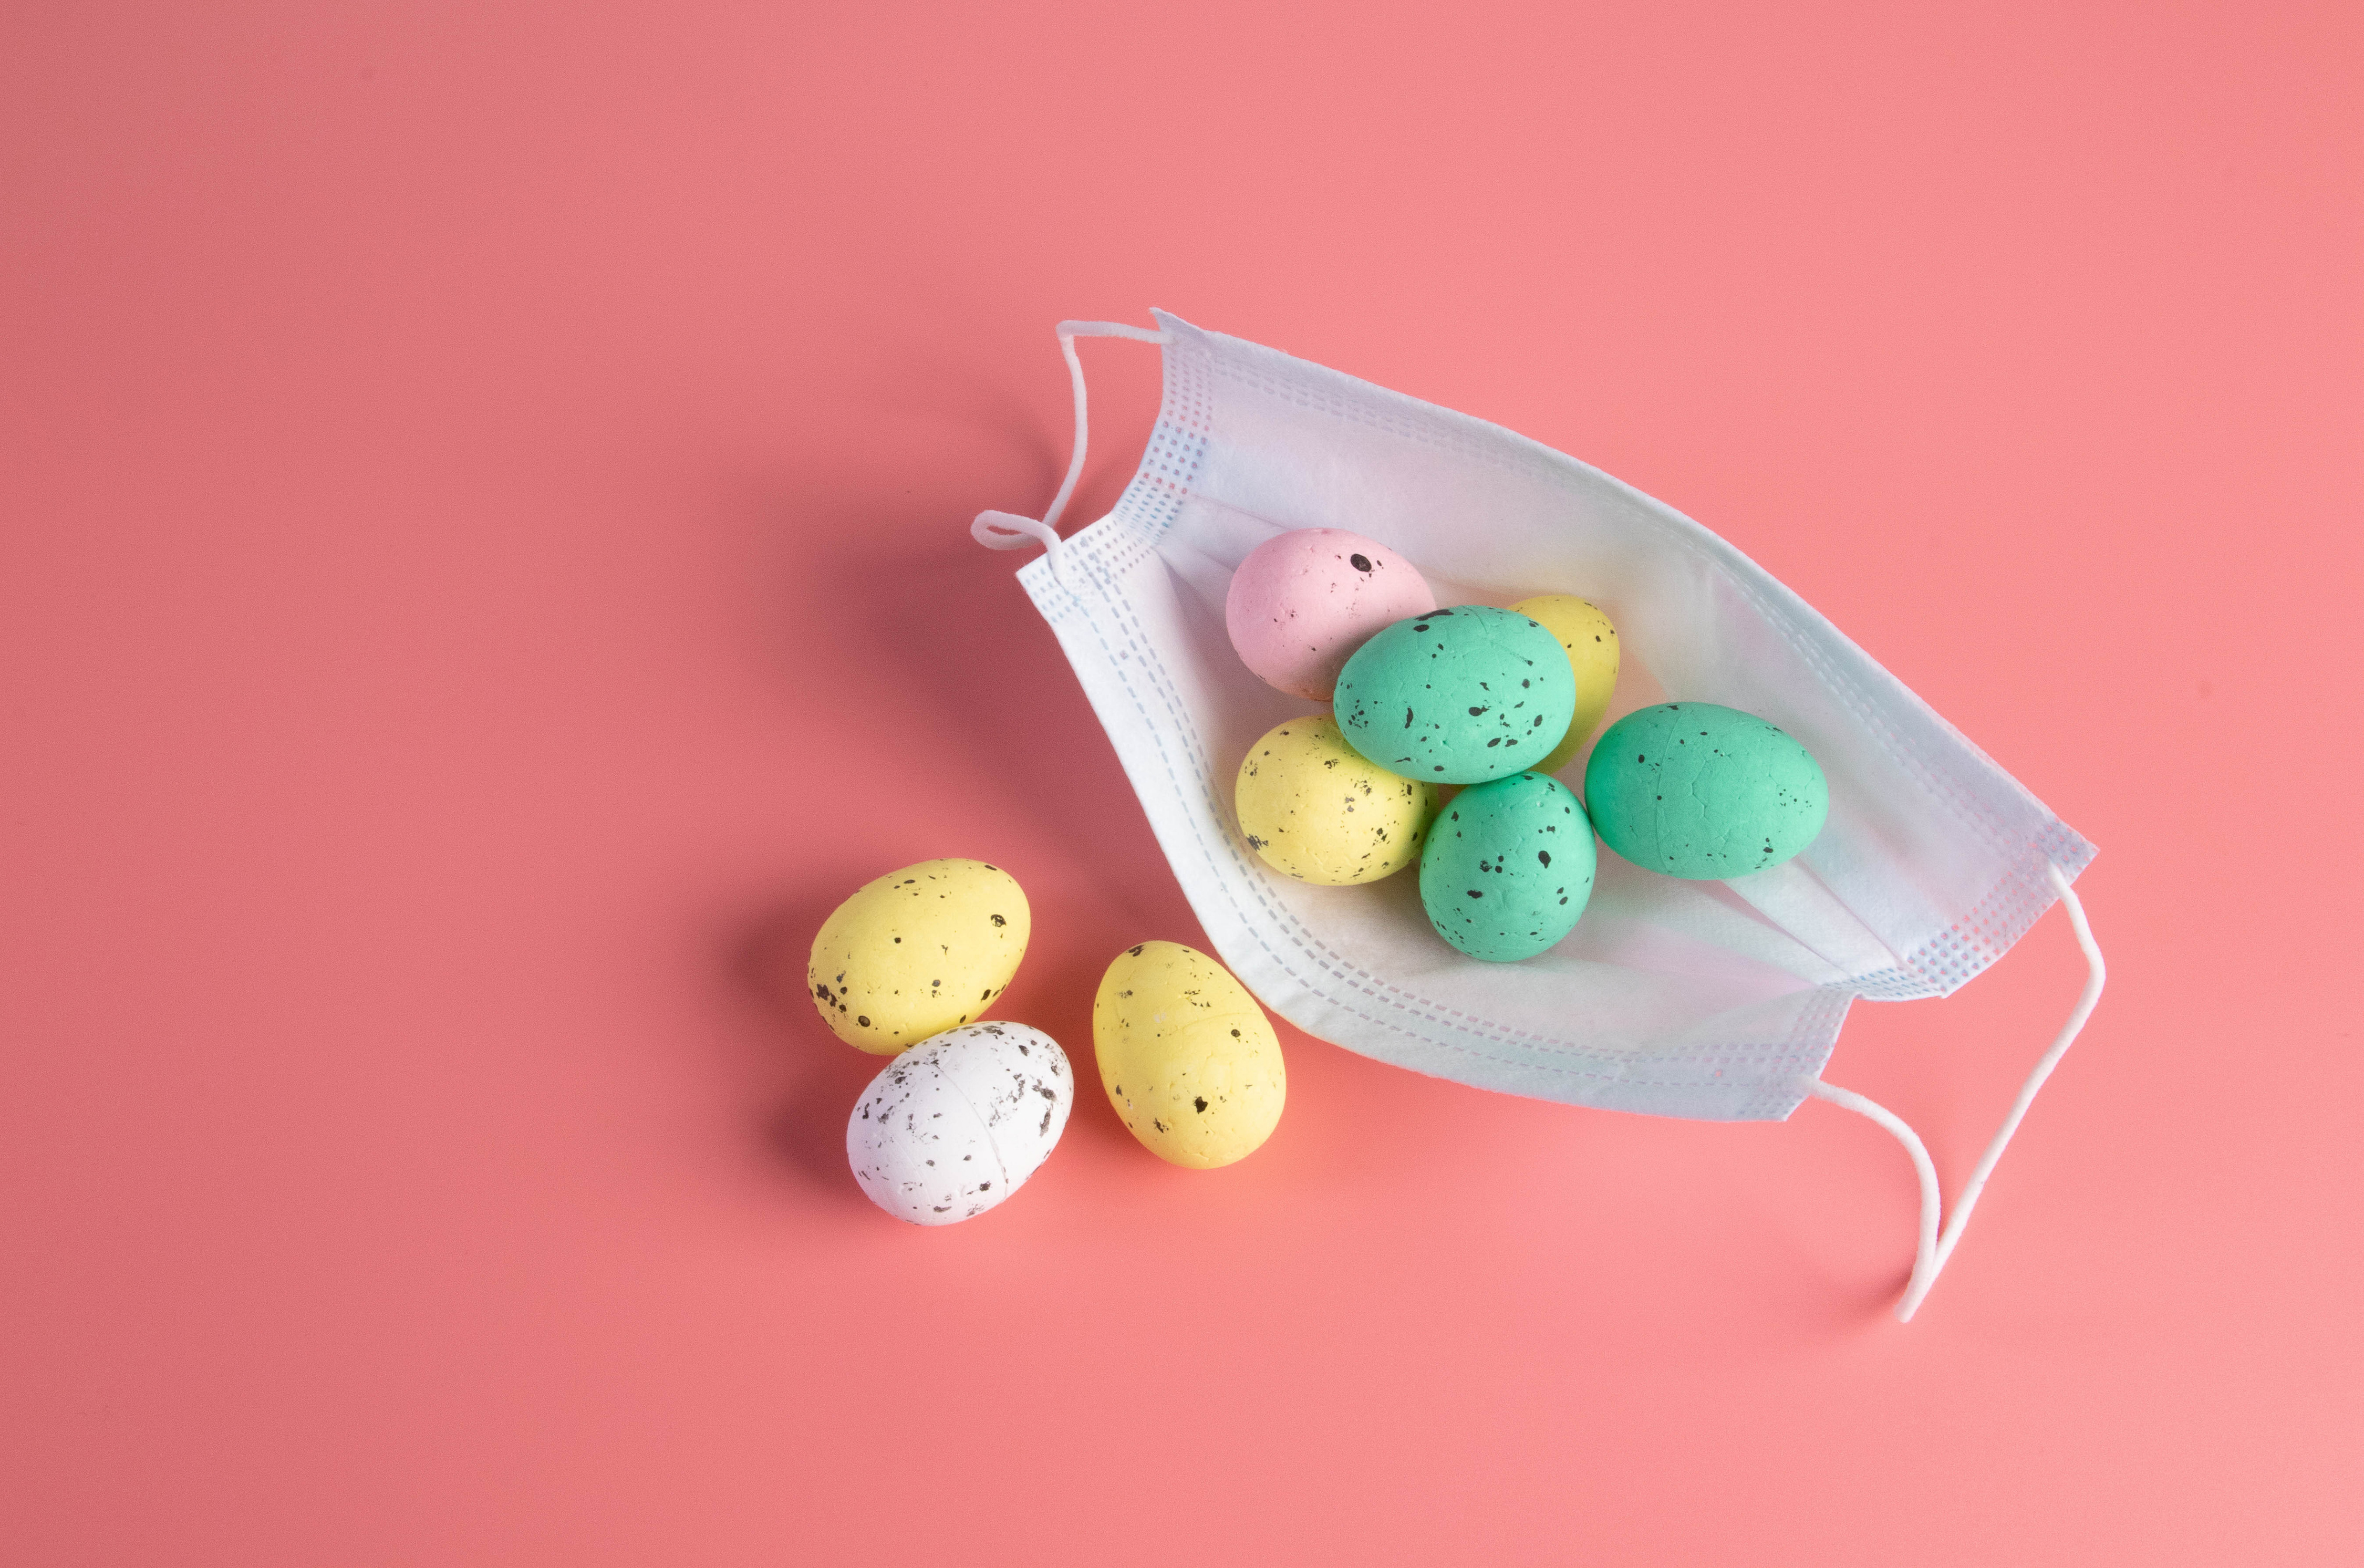 Картинка Пасха Коронавирус яйцо Пища Маски Розовый фон яиц Яйца яйцами Еда Продукты питания